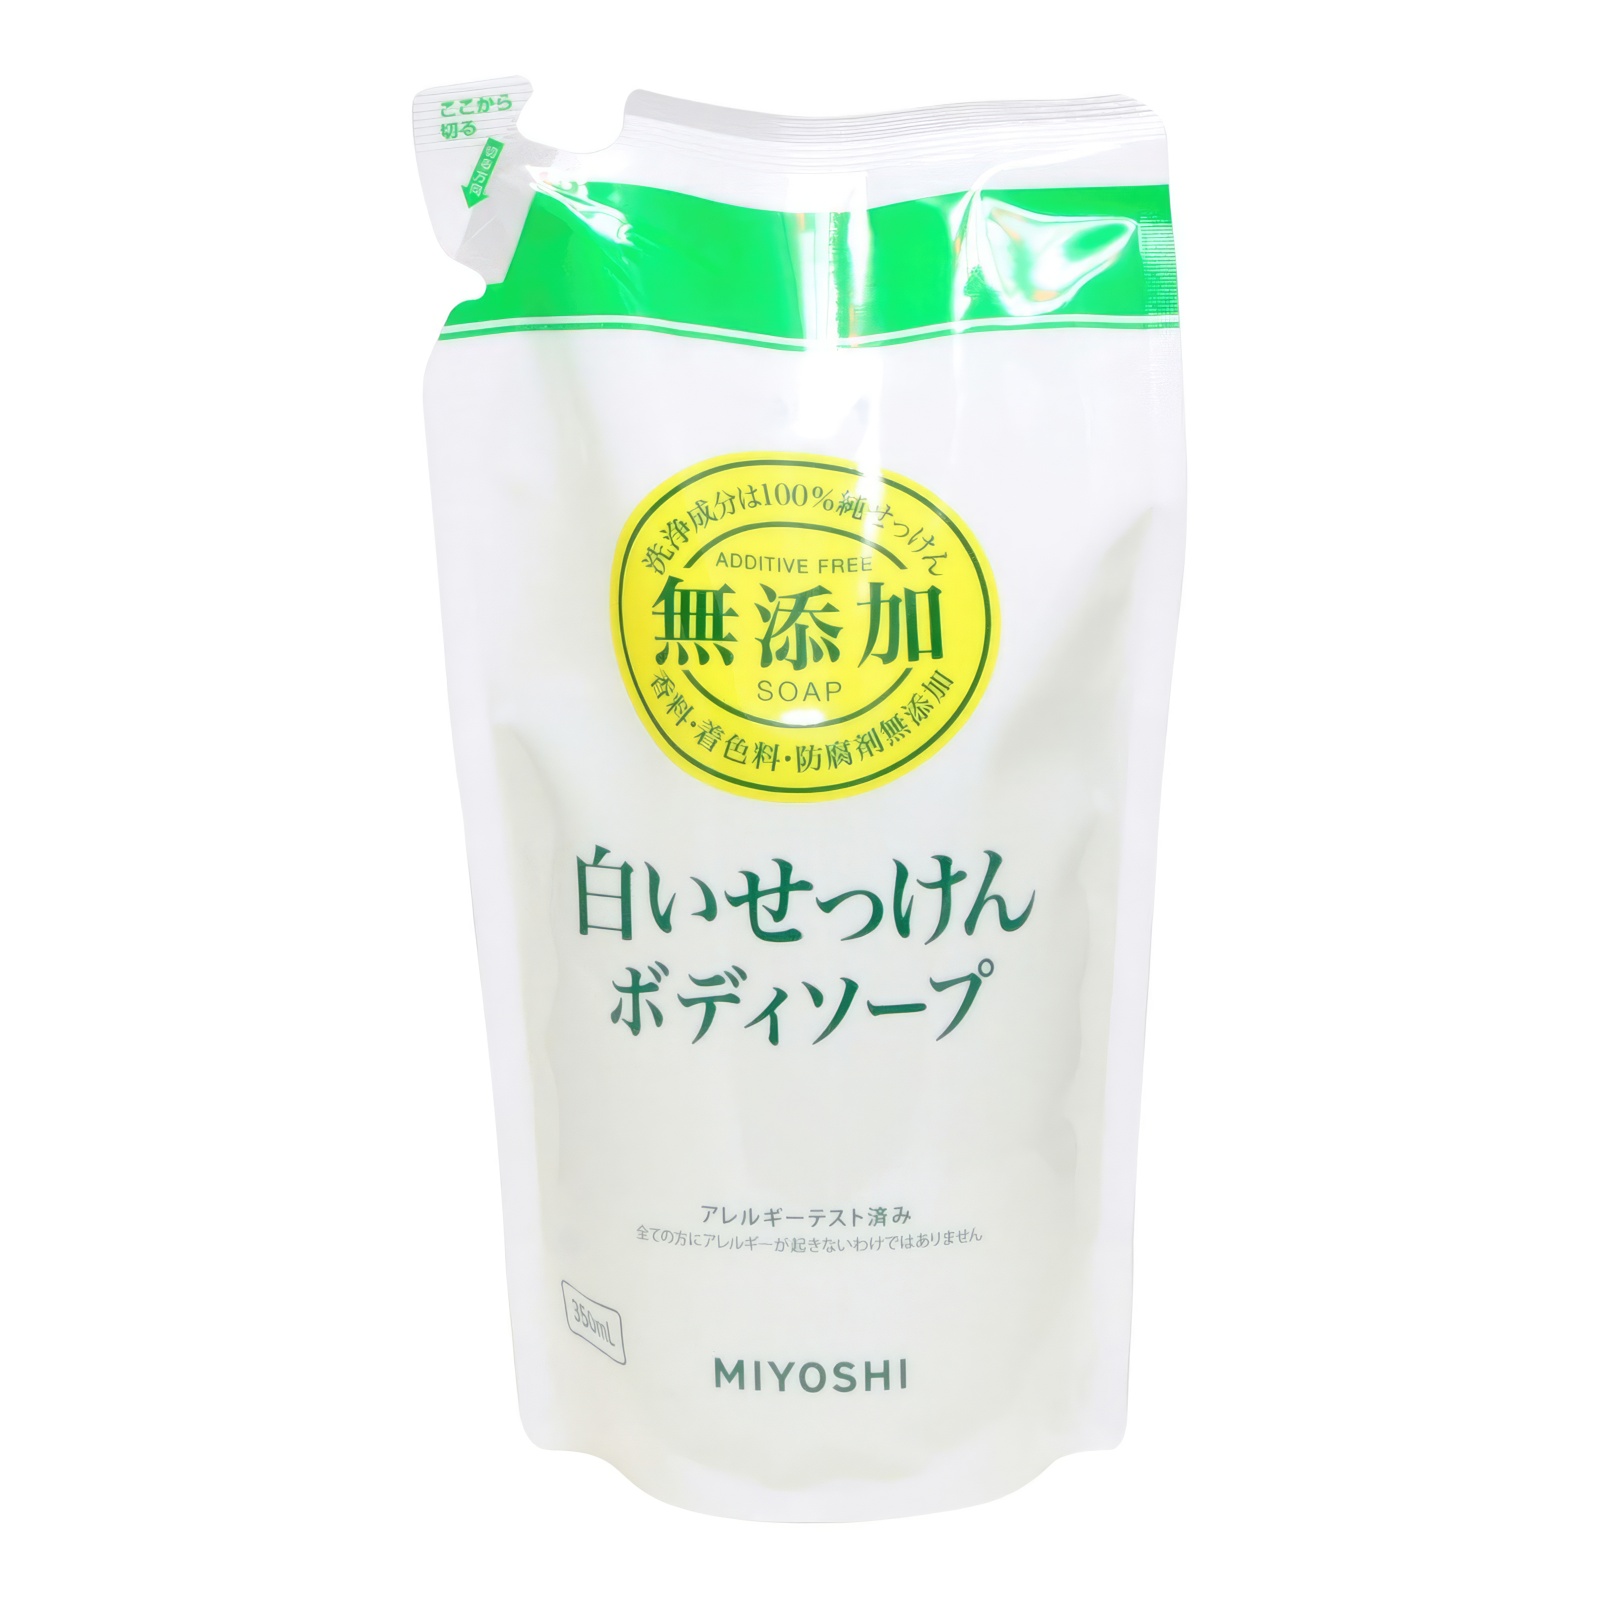 Натуральное жидкое мыло MIYOSHI эко для тела 350 мл з б myloff vsb твёрдая мыльная основа 1 кг